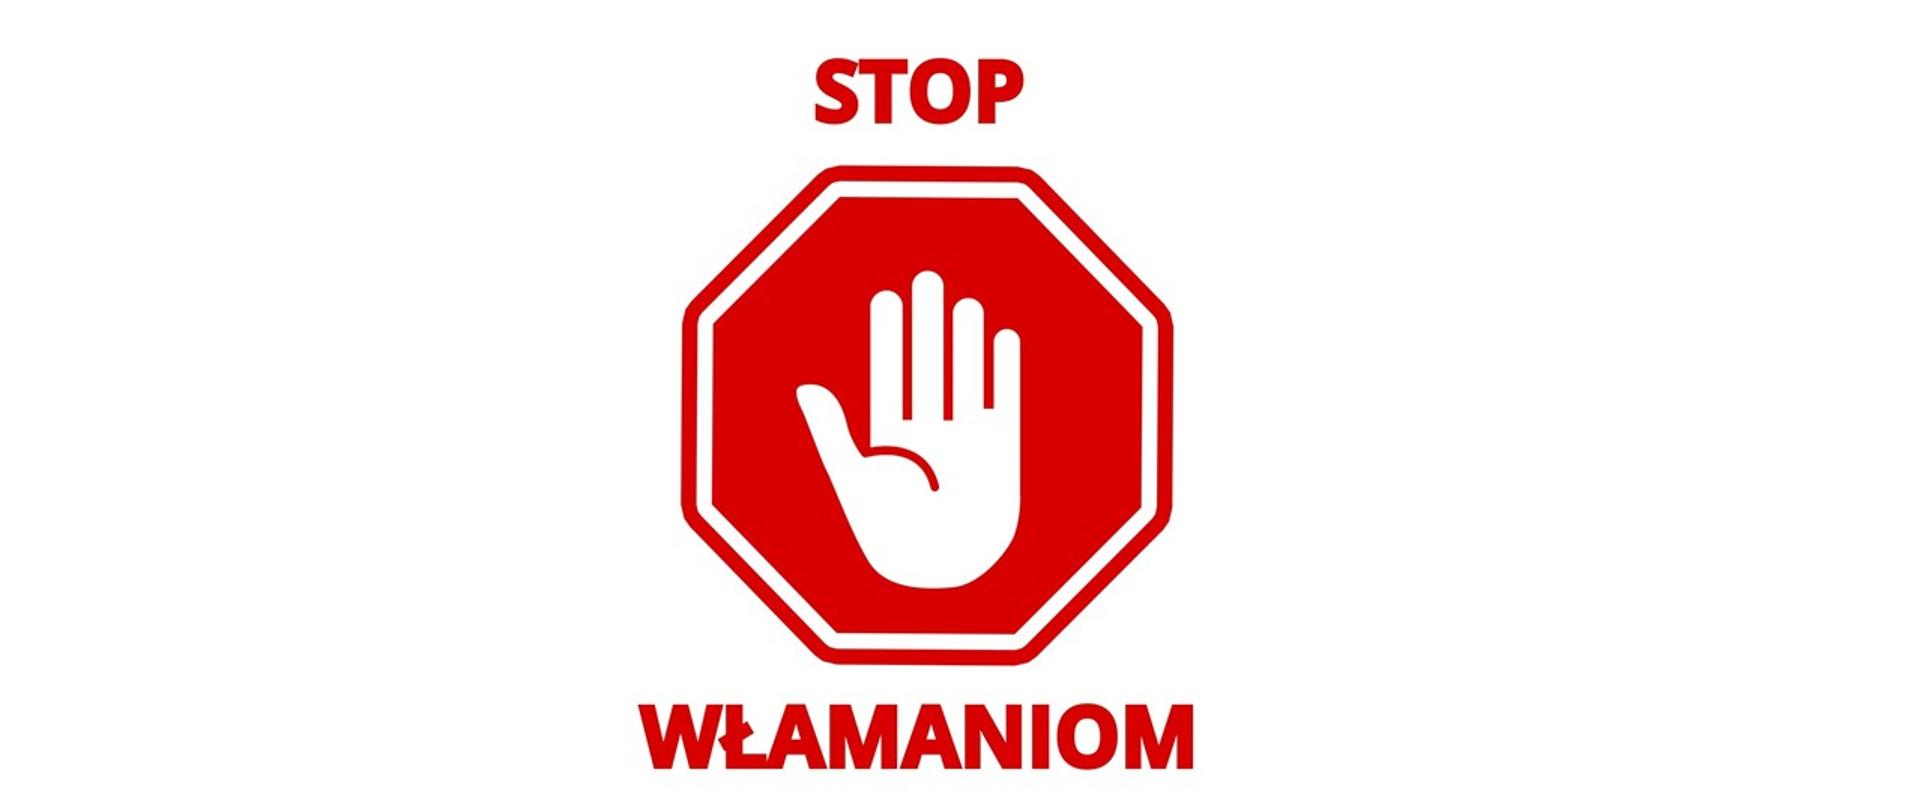 Ośmiokątny znak „stop” z wpisaną w niego białą, otwartą dłonią, powyżej znaku słowo „stop”, poniżej znaku słowo „włamaniom”.